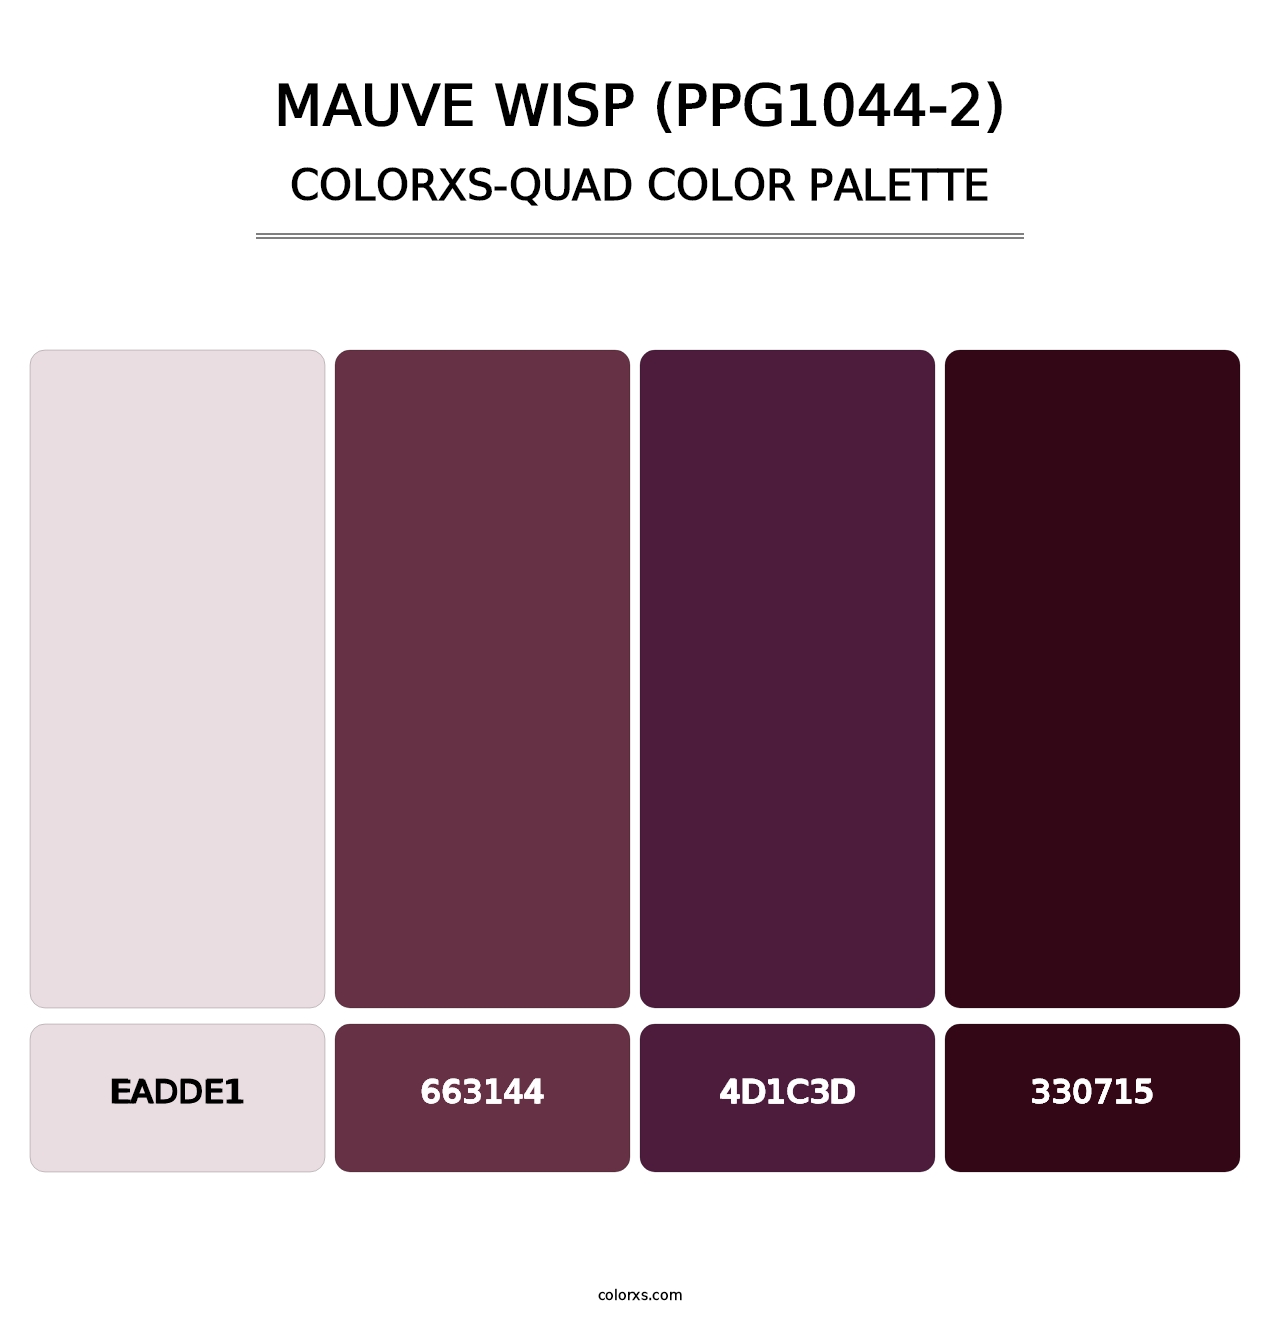 Mauve Wisp (PPG1044-2) - Colorxs Quad Palette